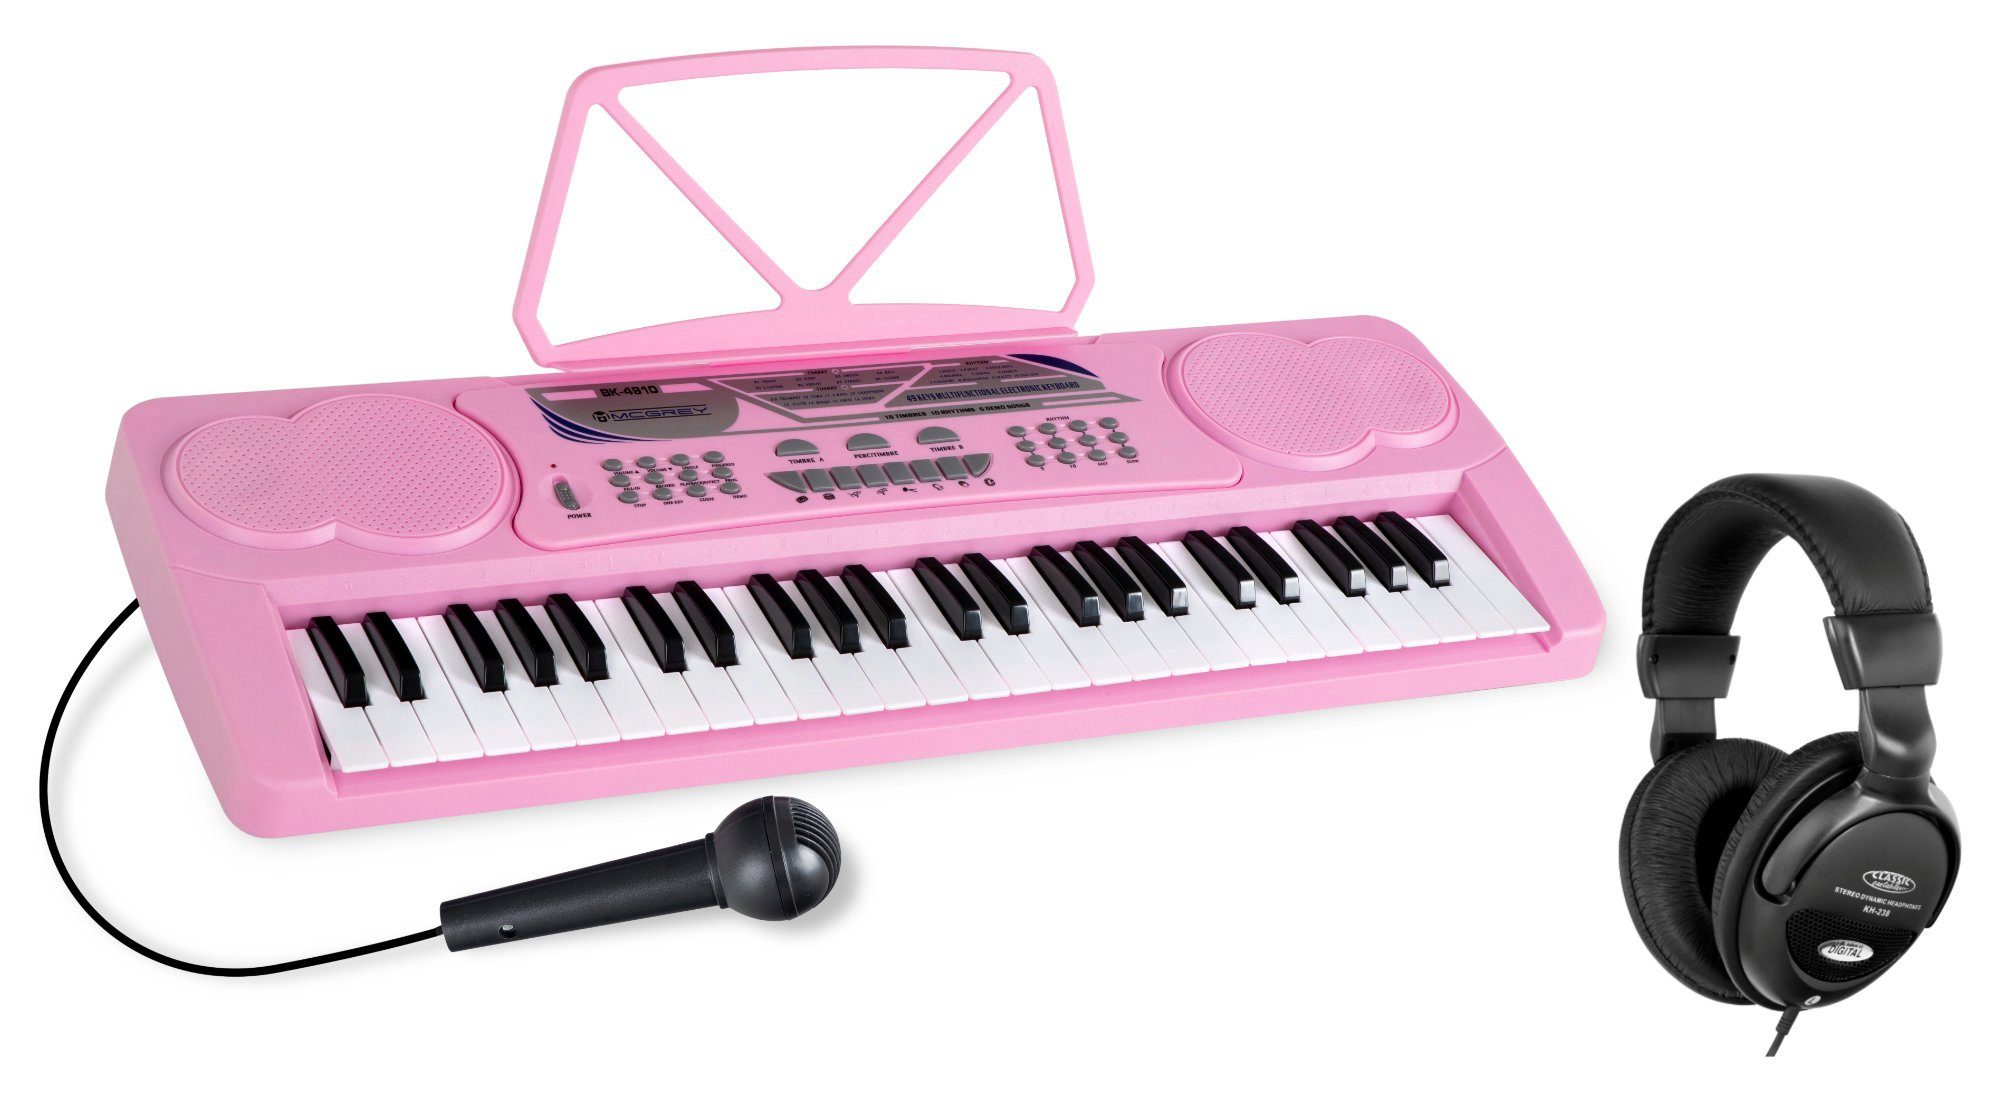 McGrey Home Keyboard »BK-4910 Keyboard Set - Kinder Keyboard mit 49 Tasten  - Einsteigerkeyboard mit 16 Sounds und 10 Rhythmen - Piano mit Mikrofon für  Gesang und Notenständer - Inkl. Kopfhörer« online kaufen | OTTO